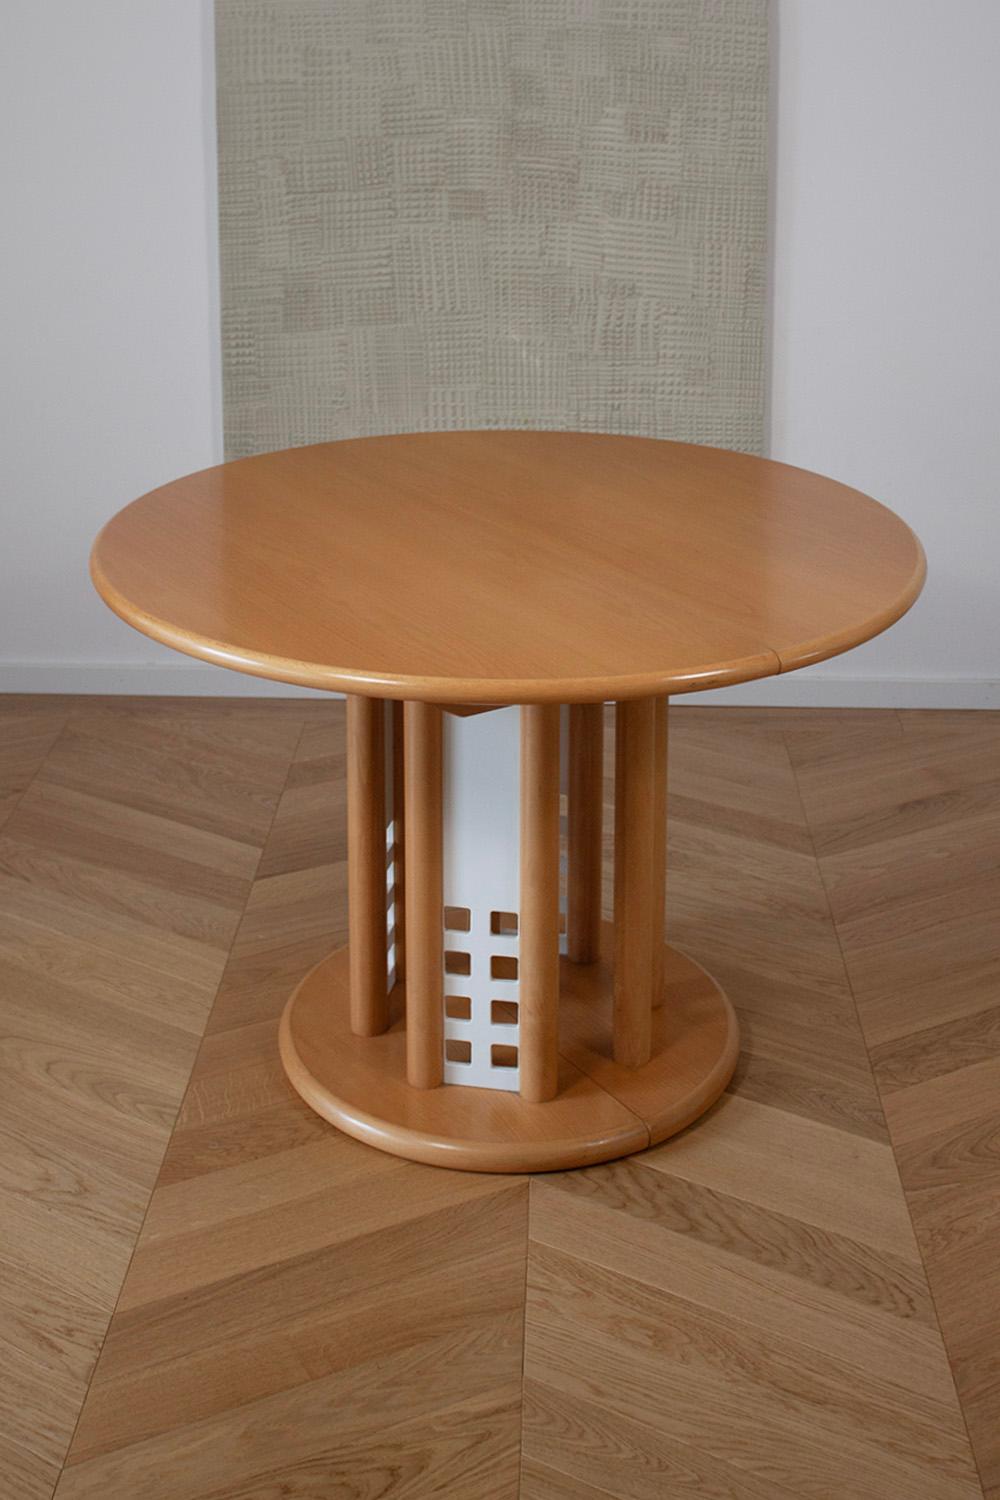 Cette très rare table extensible Thonet est un classique du design de 1990. La table est fabriquée en bois de Beeche et comporte 4 panneaux métalliques blancs à la base, qui lui donnent un air des années 90. La table est en très bon état et ne